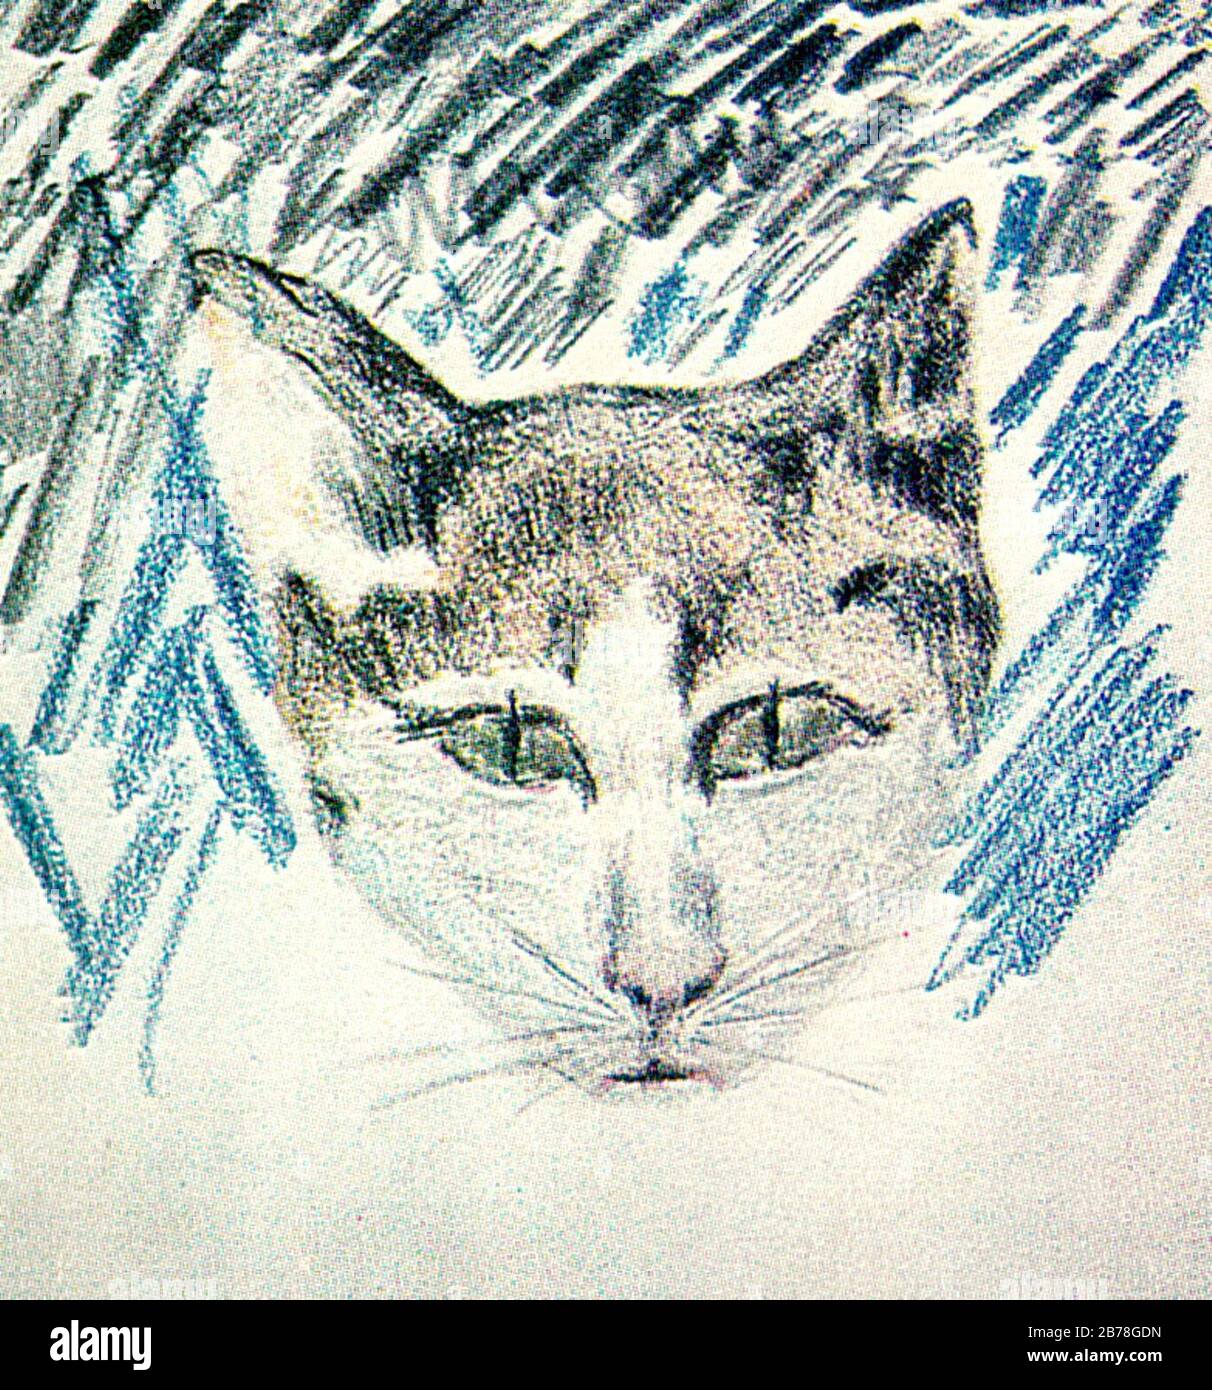 George Topîrceanu - dessin De crayon Coloré d'un chat. Banque D'Images